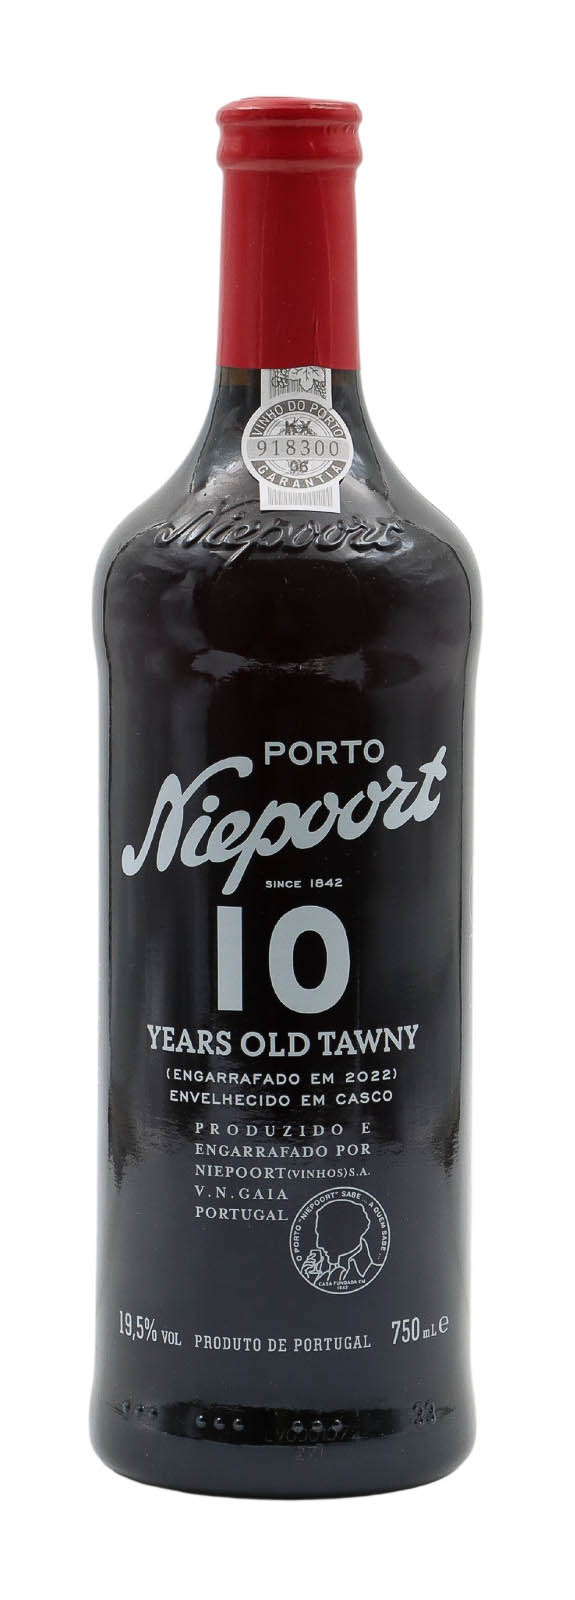 N.V. Niepoort 10 Years Old Tawny Port